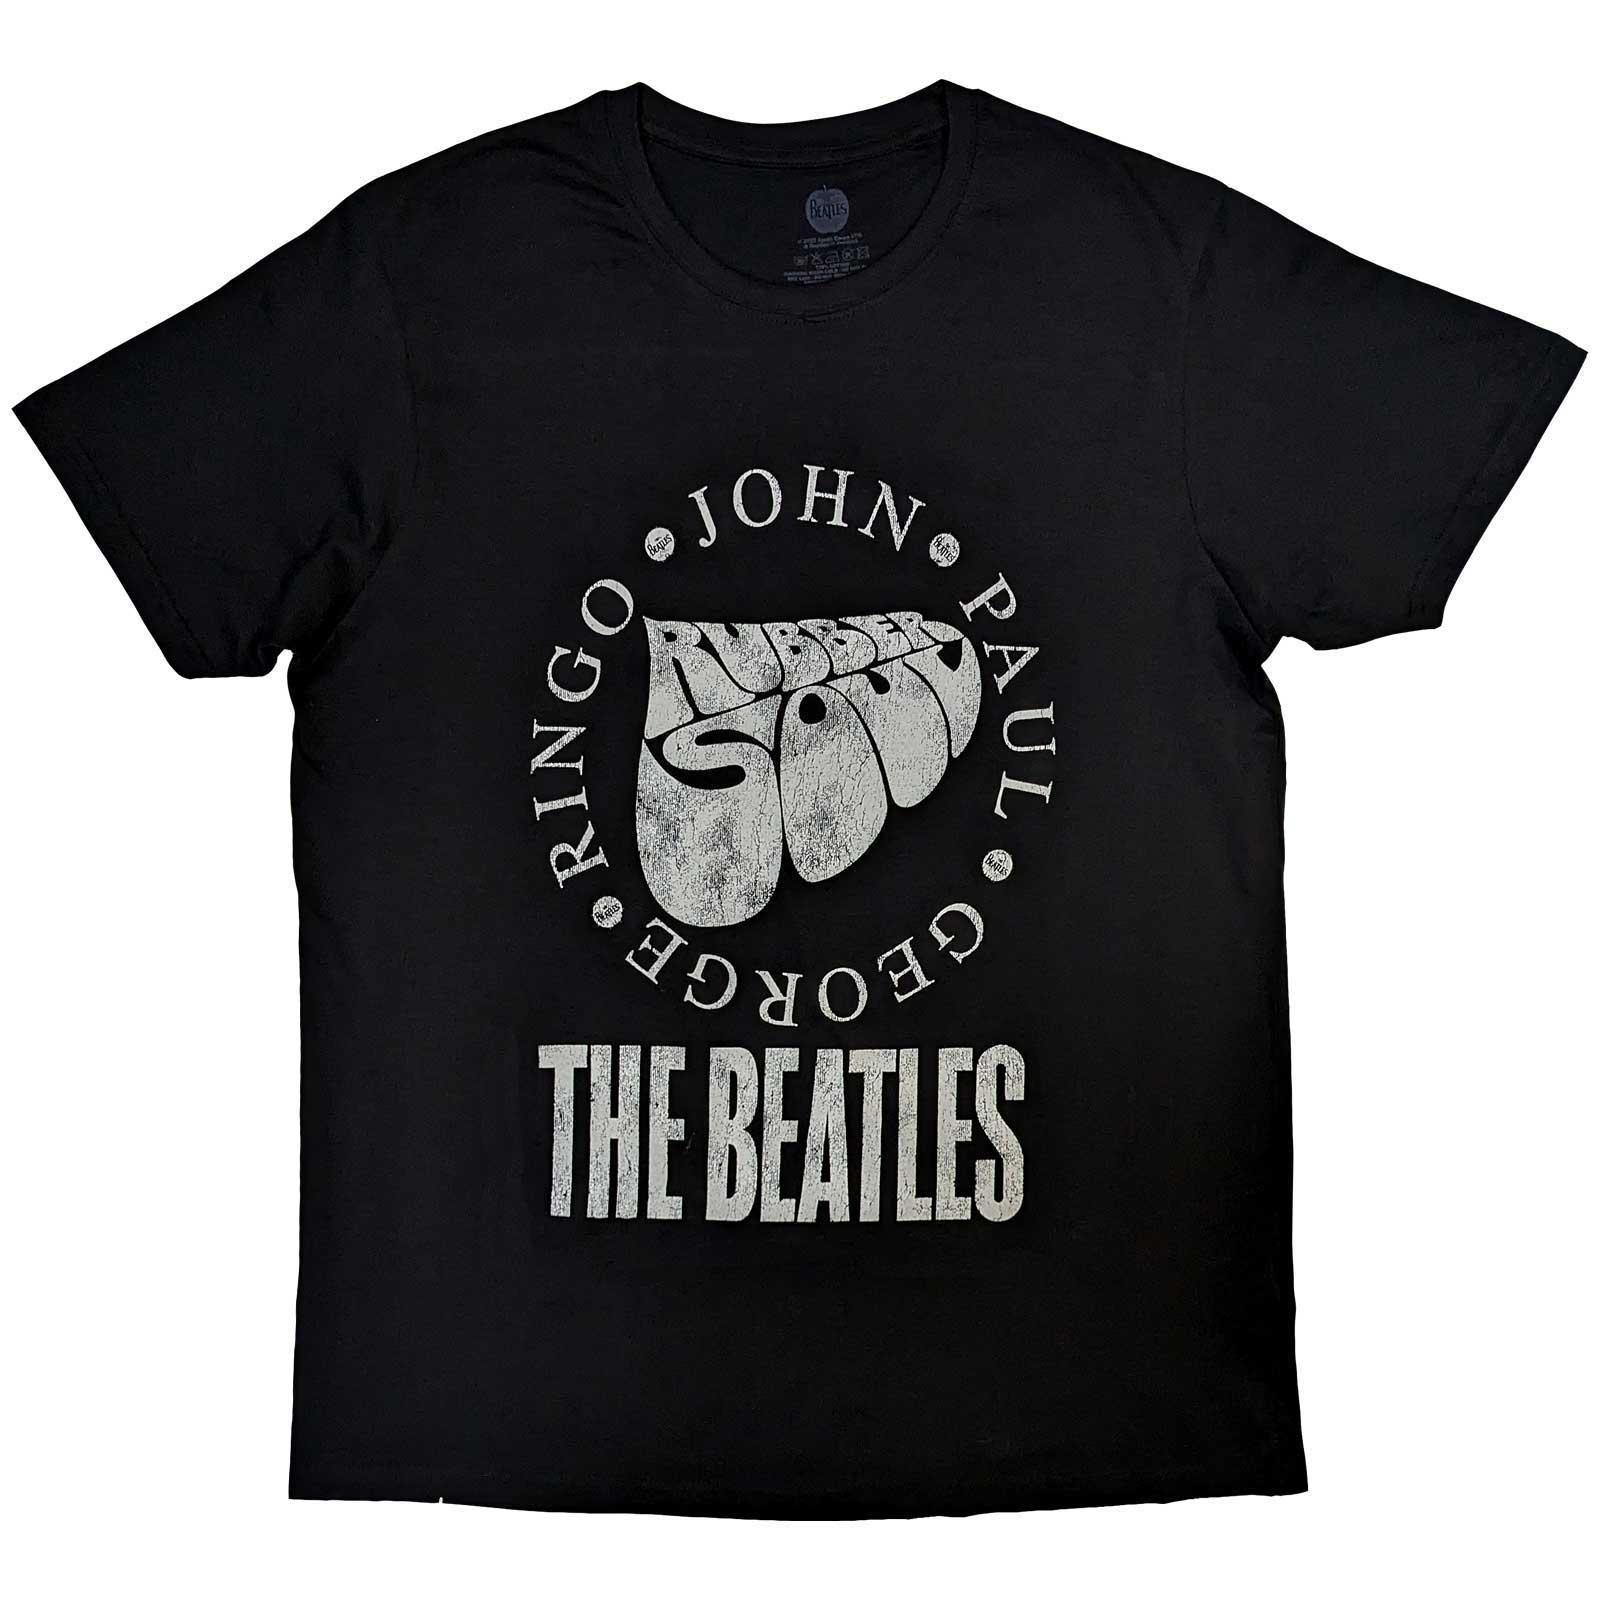 The Beatles Unisex Adult Rubber Soul Names Cotton T-Shirt (Black) (S)